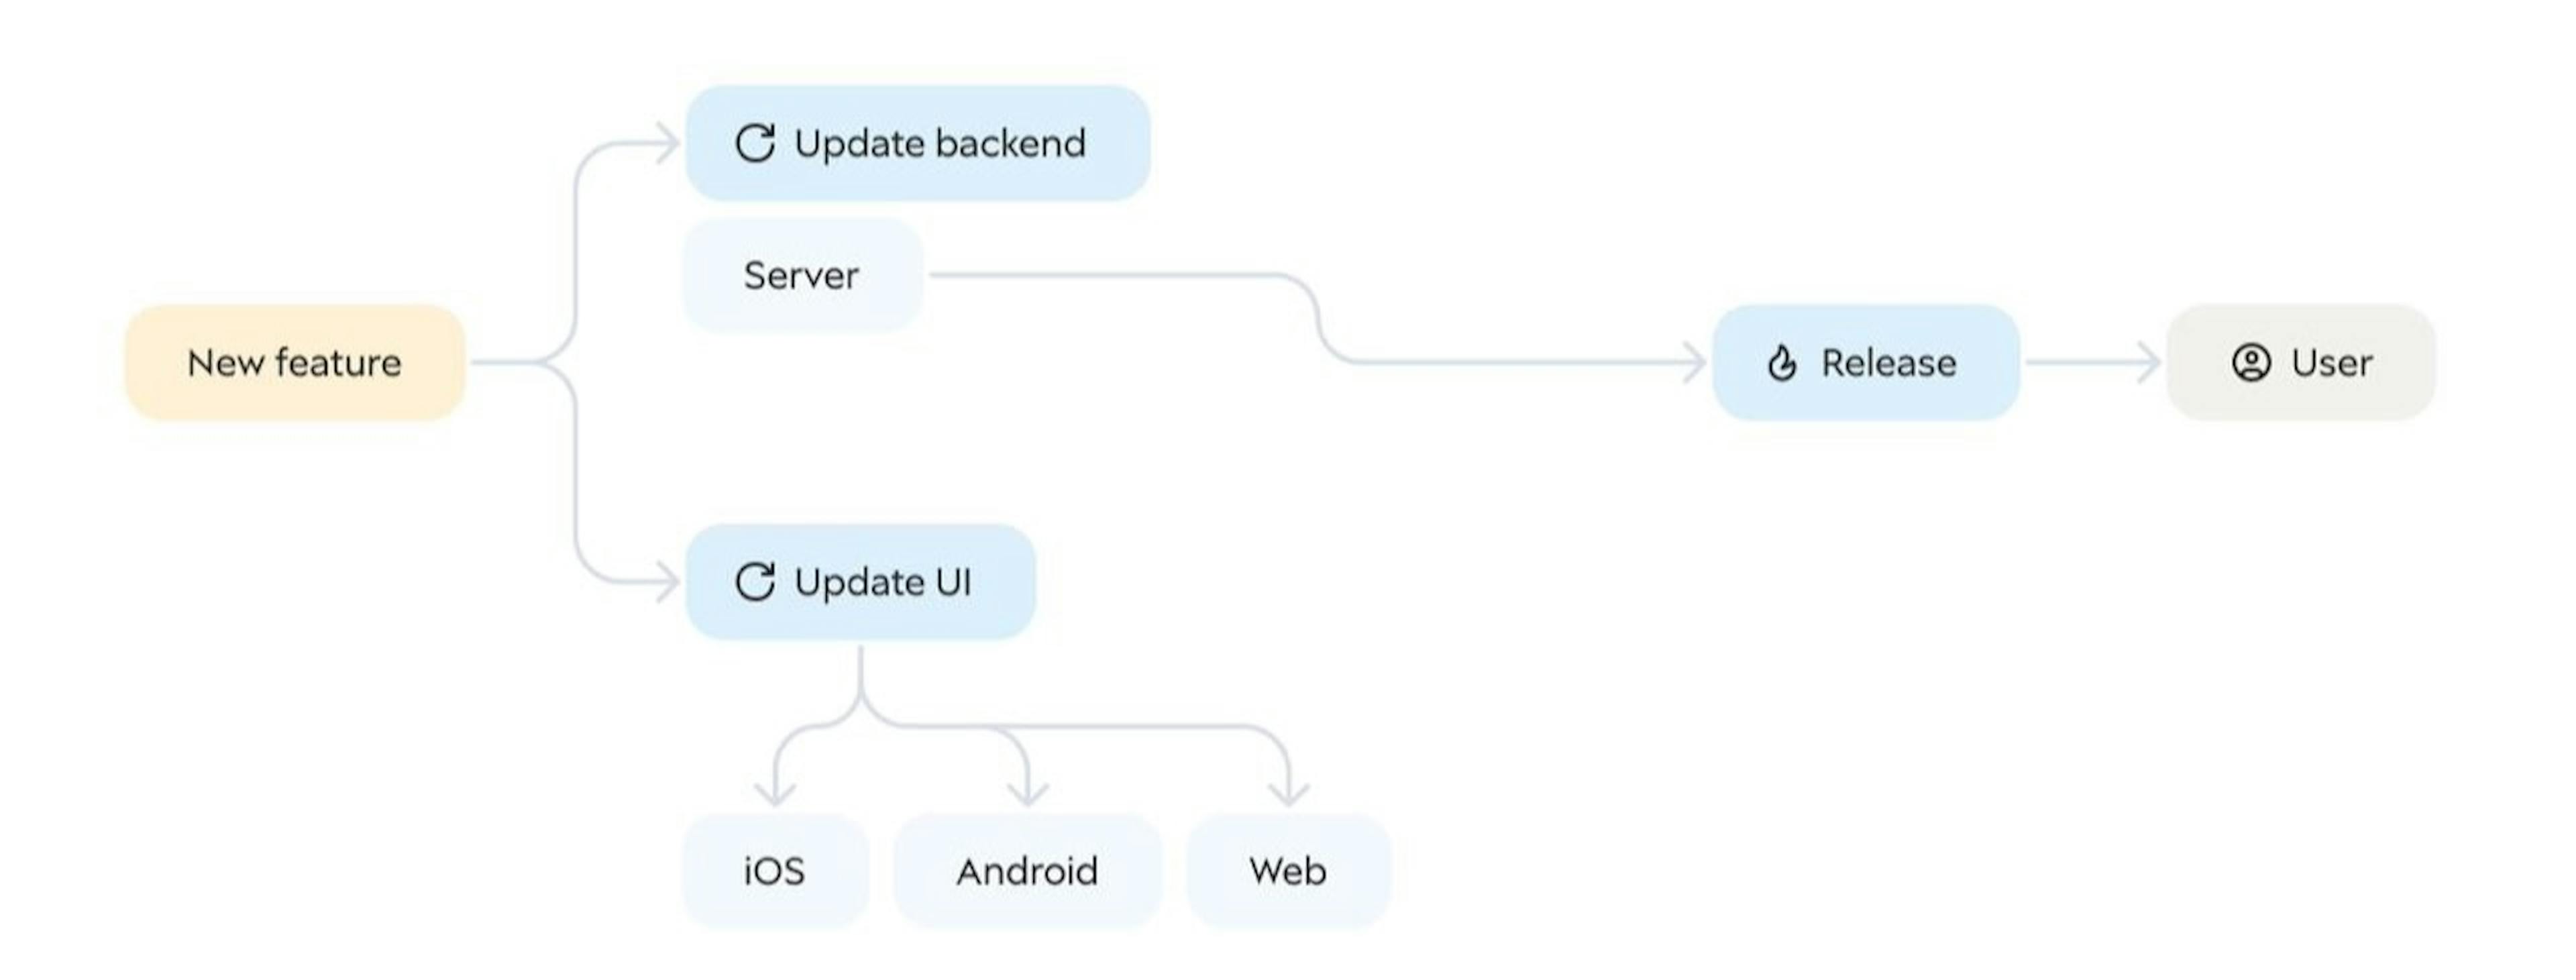 Modelo de UI baseado em back-end